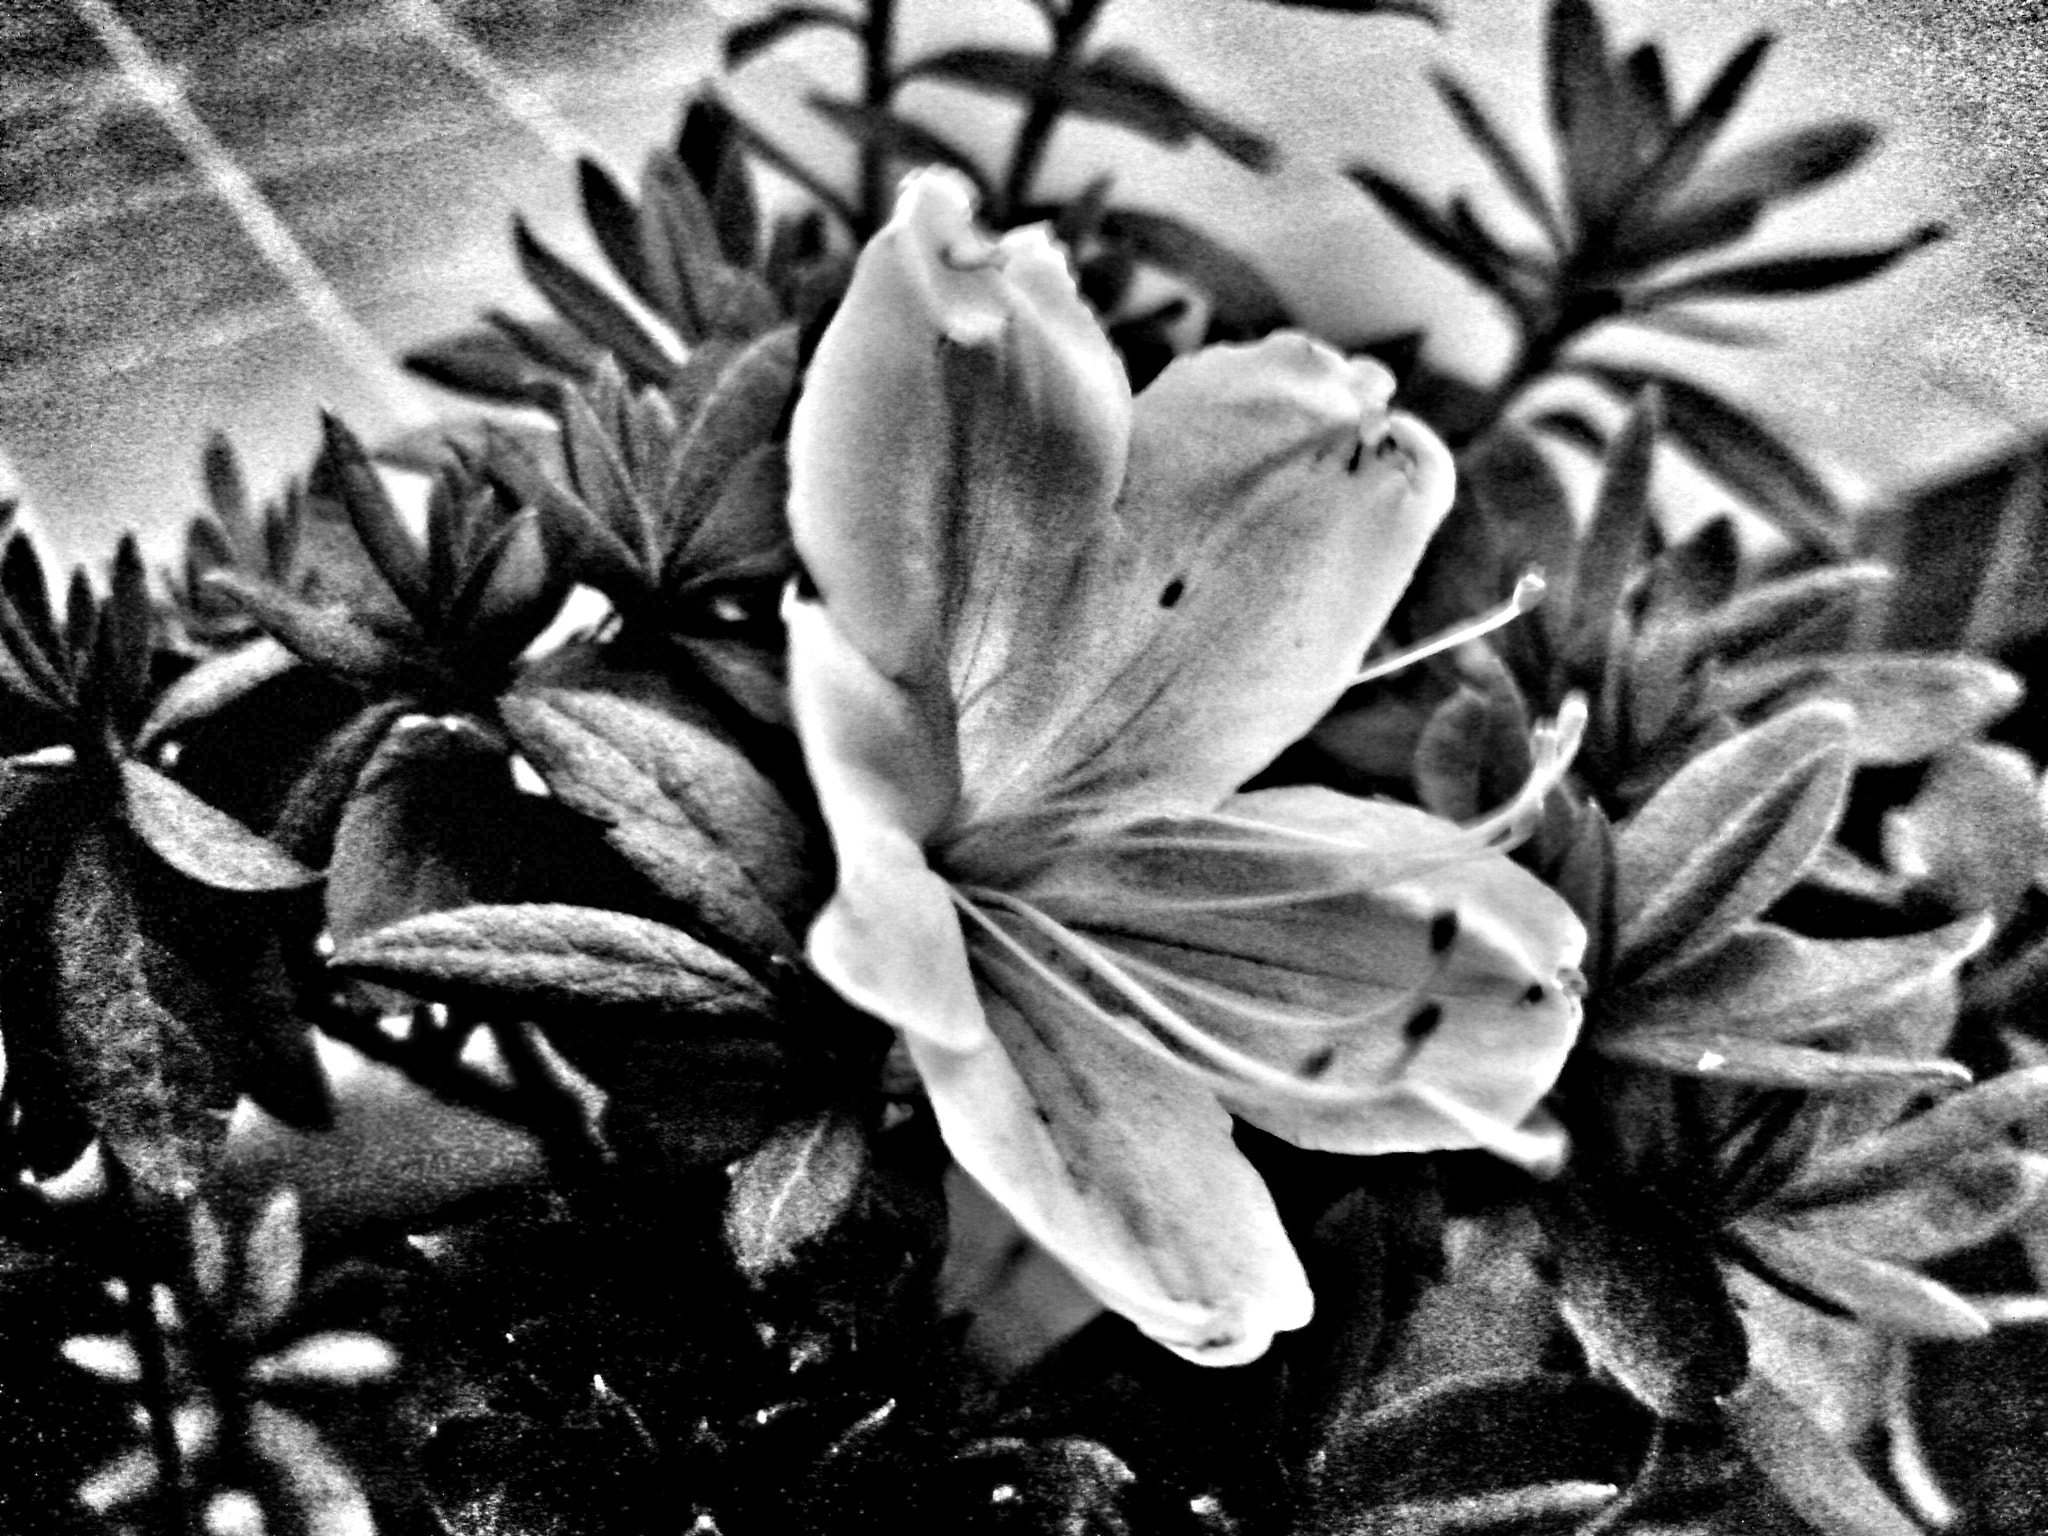 Motorola RAZR D3 sample photo. La linda flor en blanco y negro photography